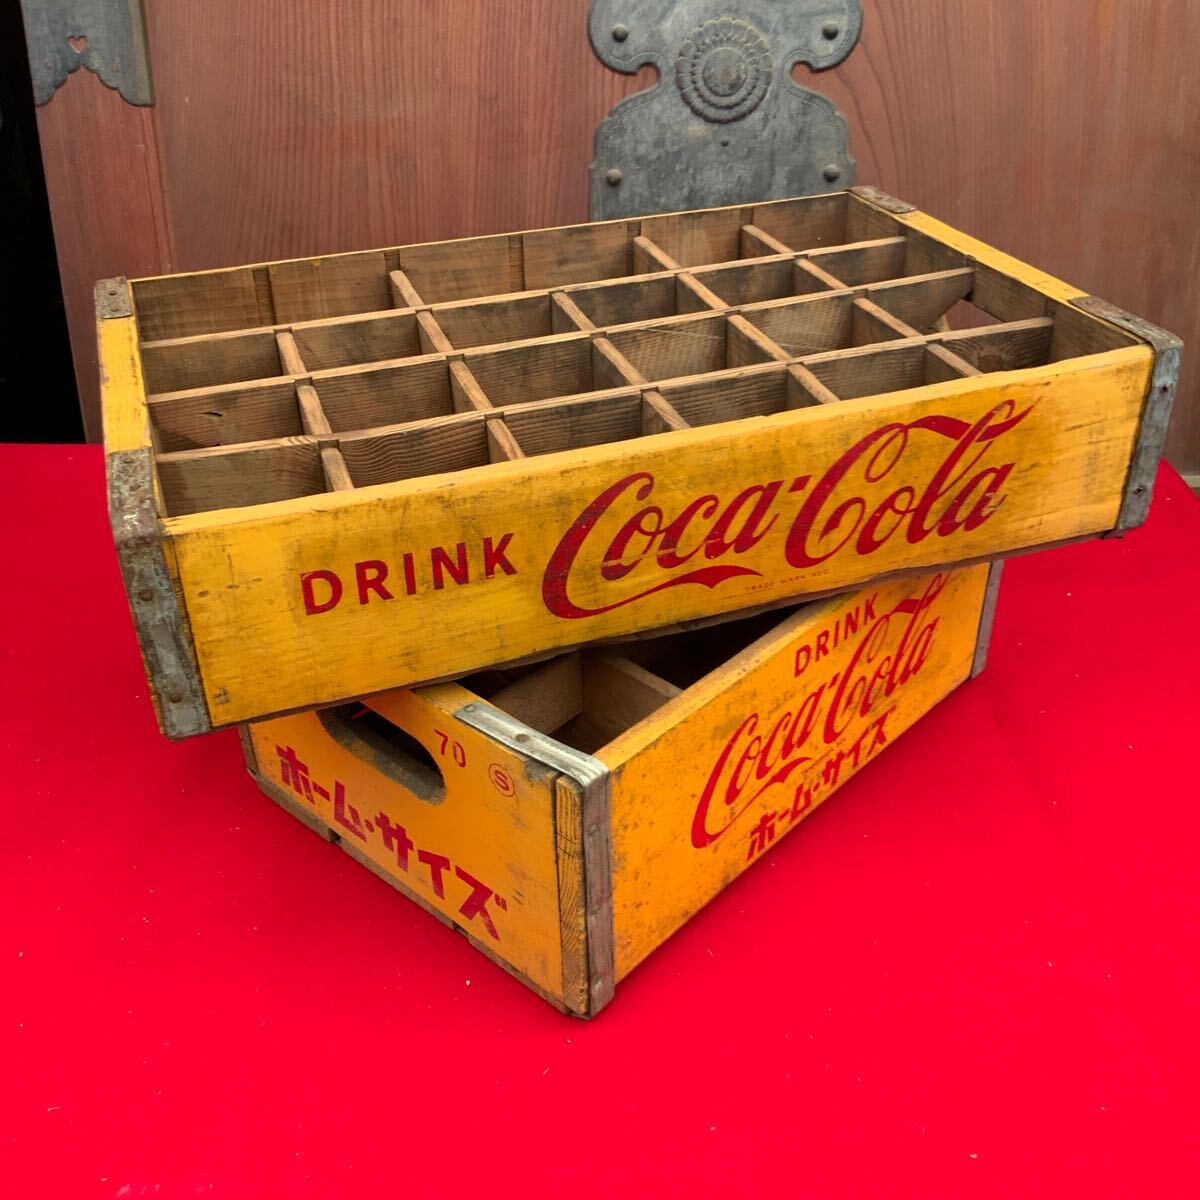  бесплатная доставка! Coca Cola дерево коробка 2. бутылка кейс античный retro подлинная вещь Coca-Cola Showa Retro Coca Cola Novelty из дерева кейс коробка 